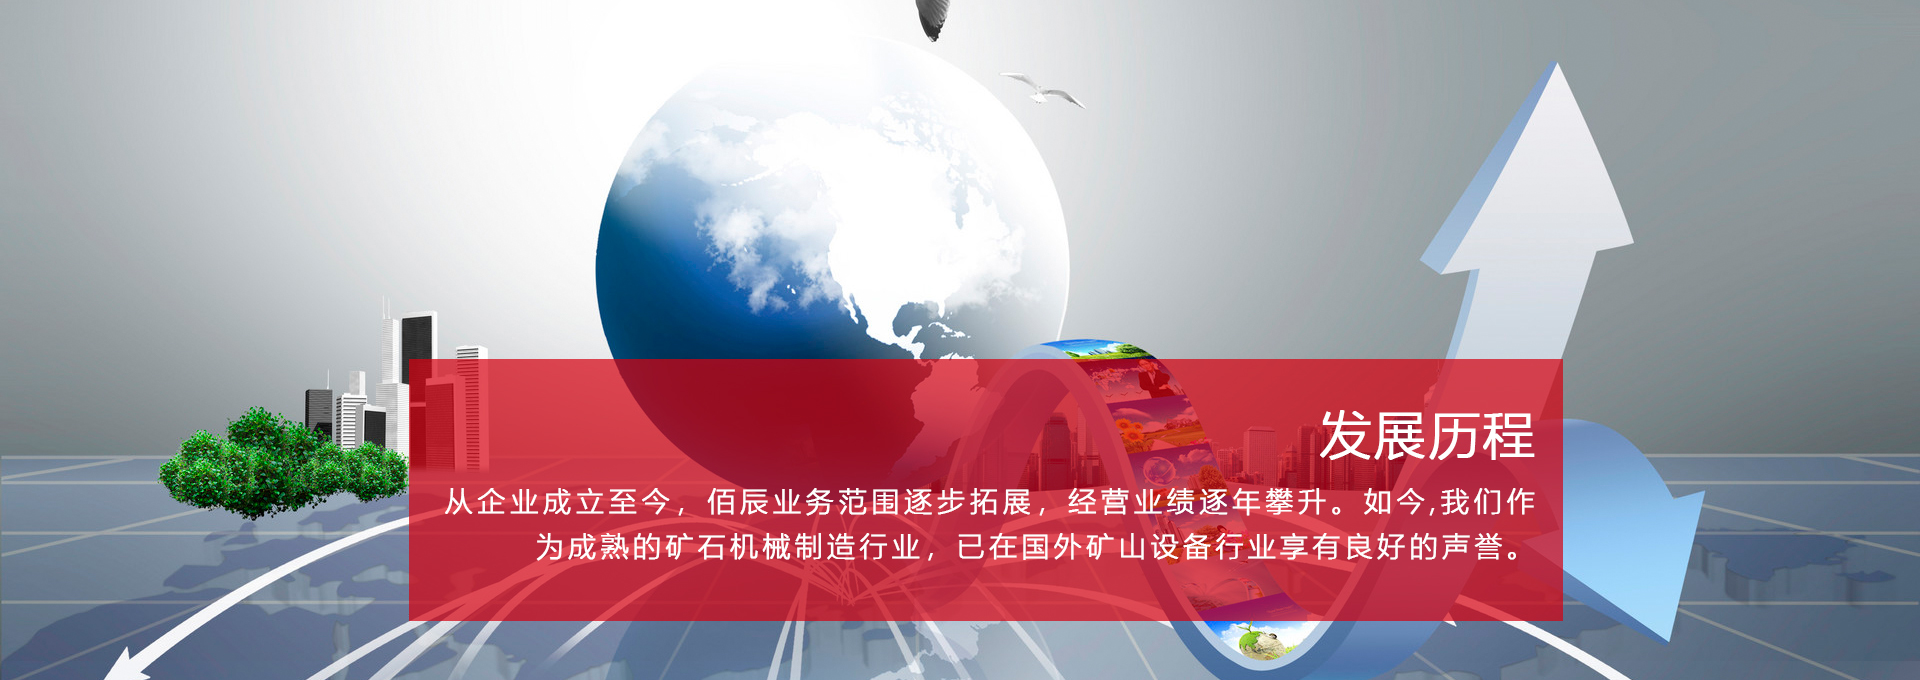 焦作bat365在线平台(中国)有限公司·官网